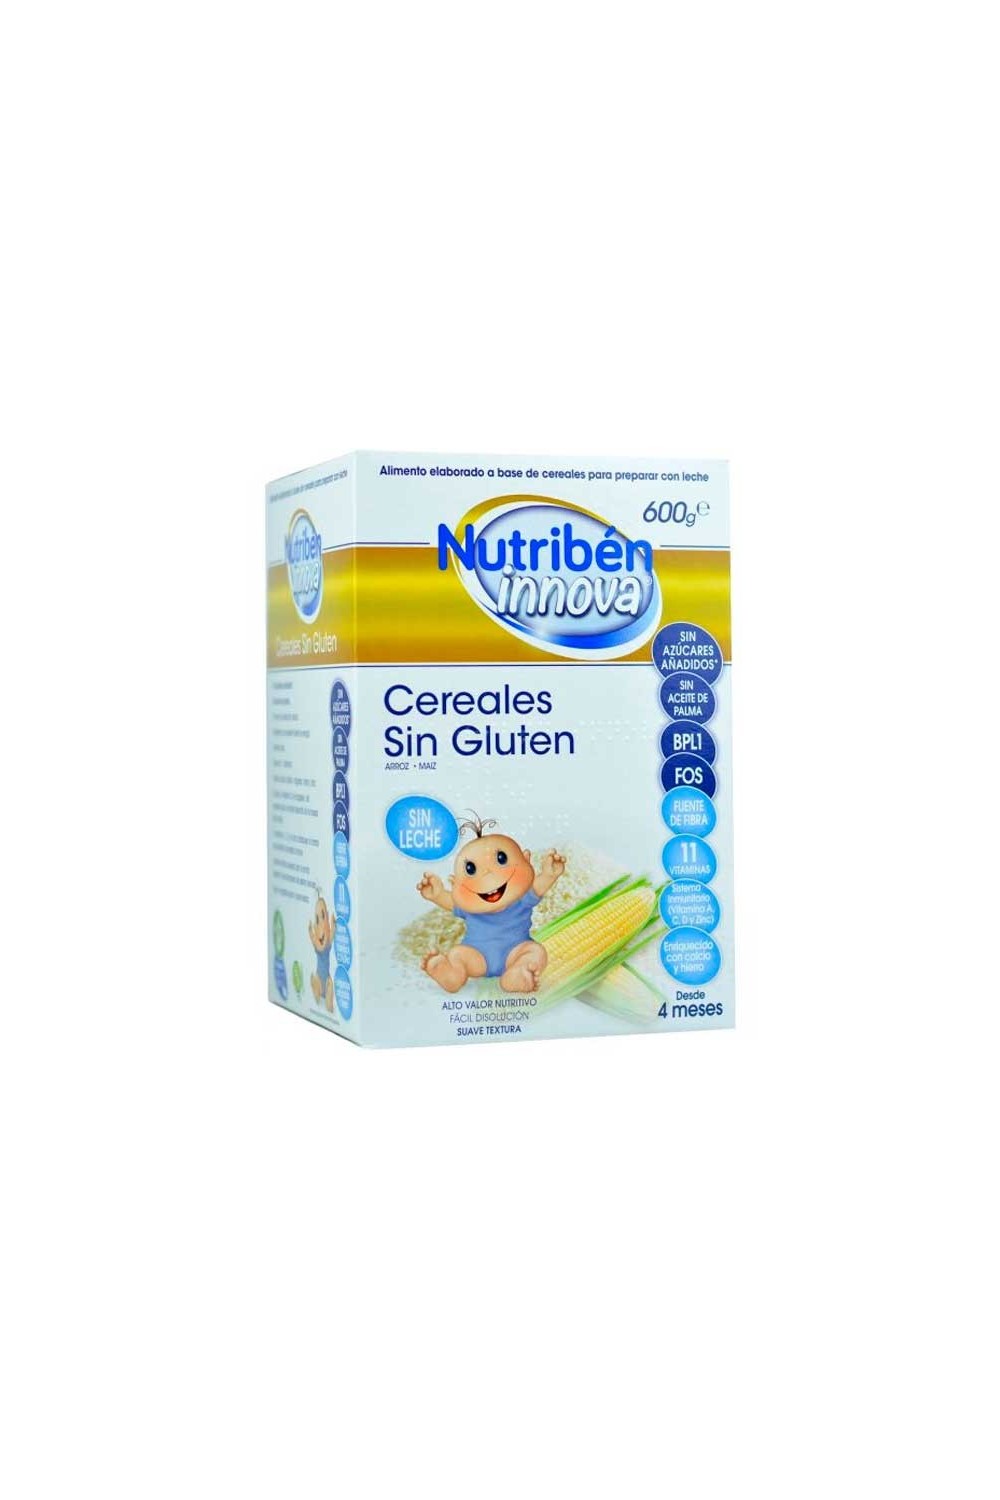 NUTRIBEN - Nutribén Innova Gluten Free Cereals 600g